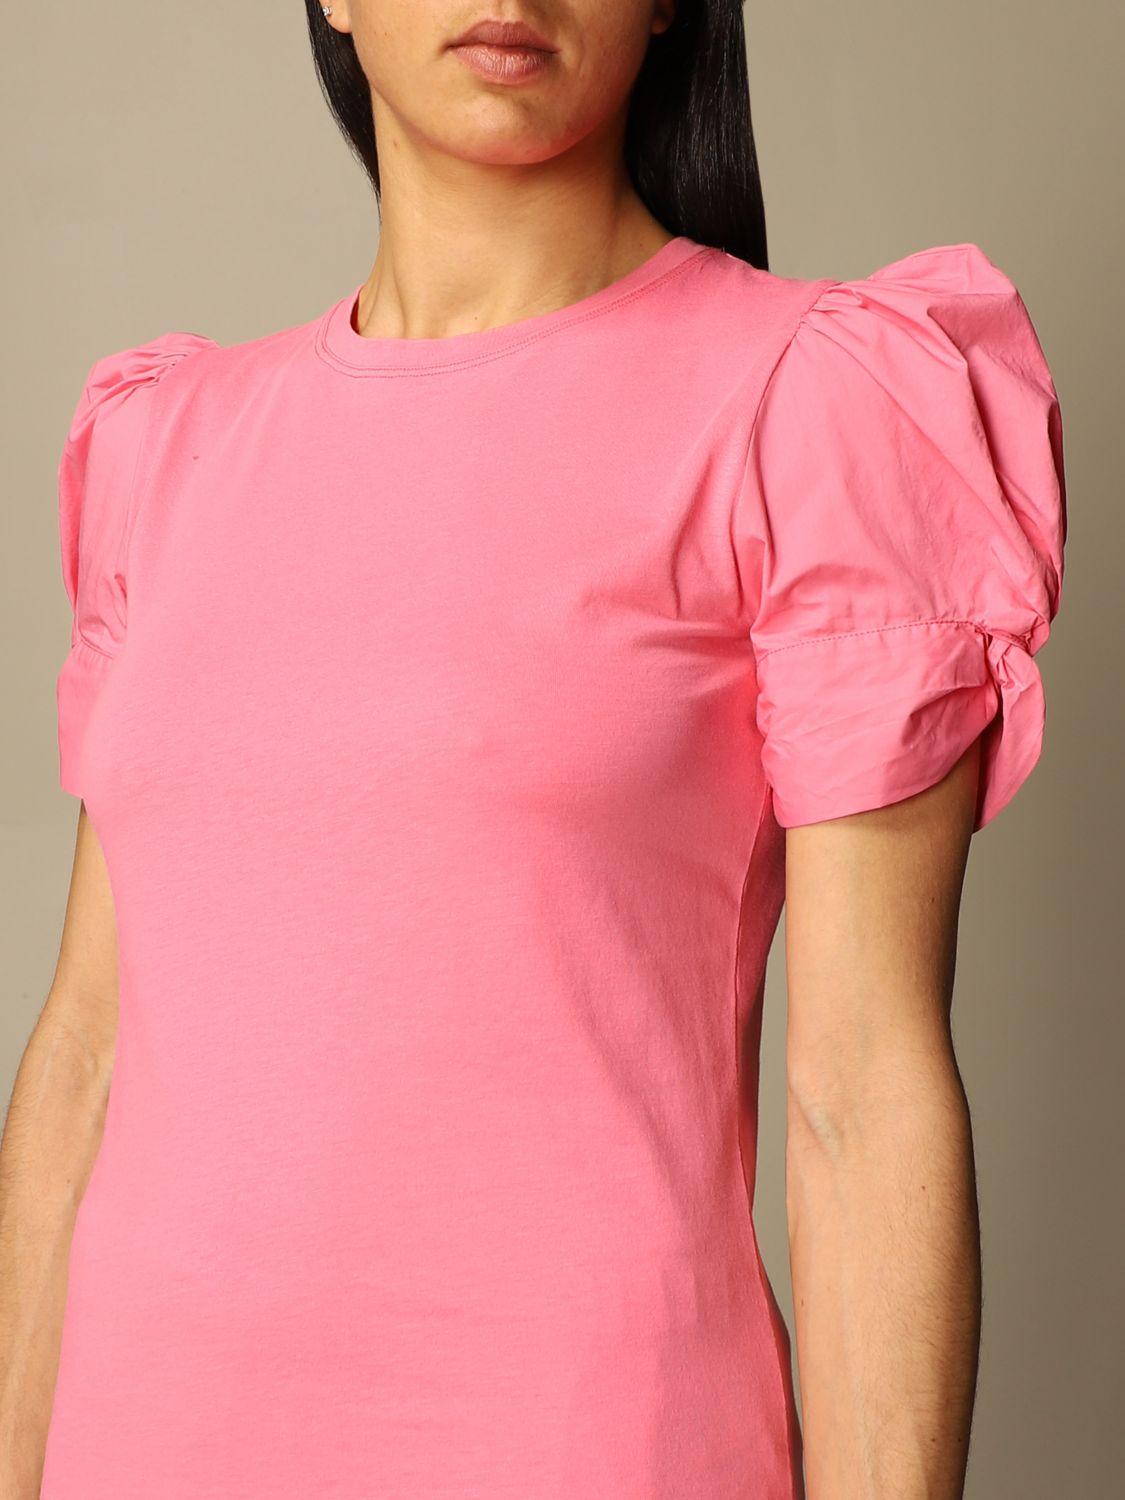 SEMICOUTURE: T-shirt women | T-Shirt Semicouture Women Pink | T-Shirt ...